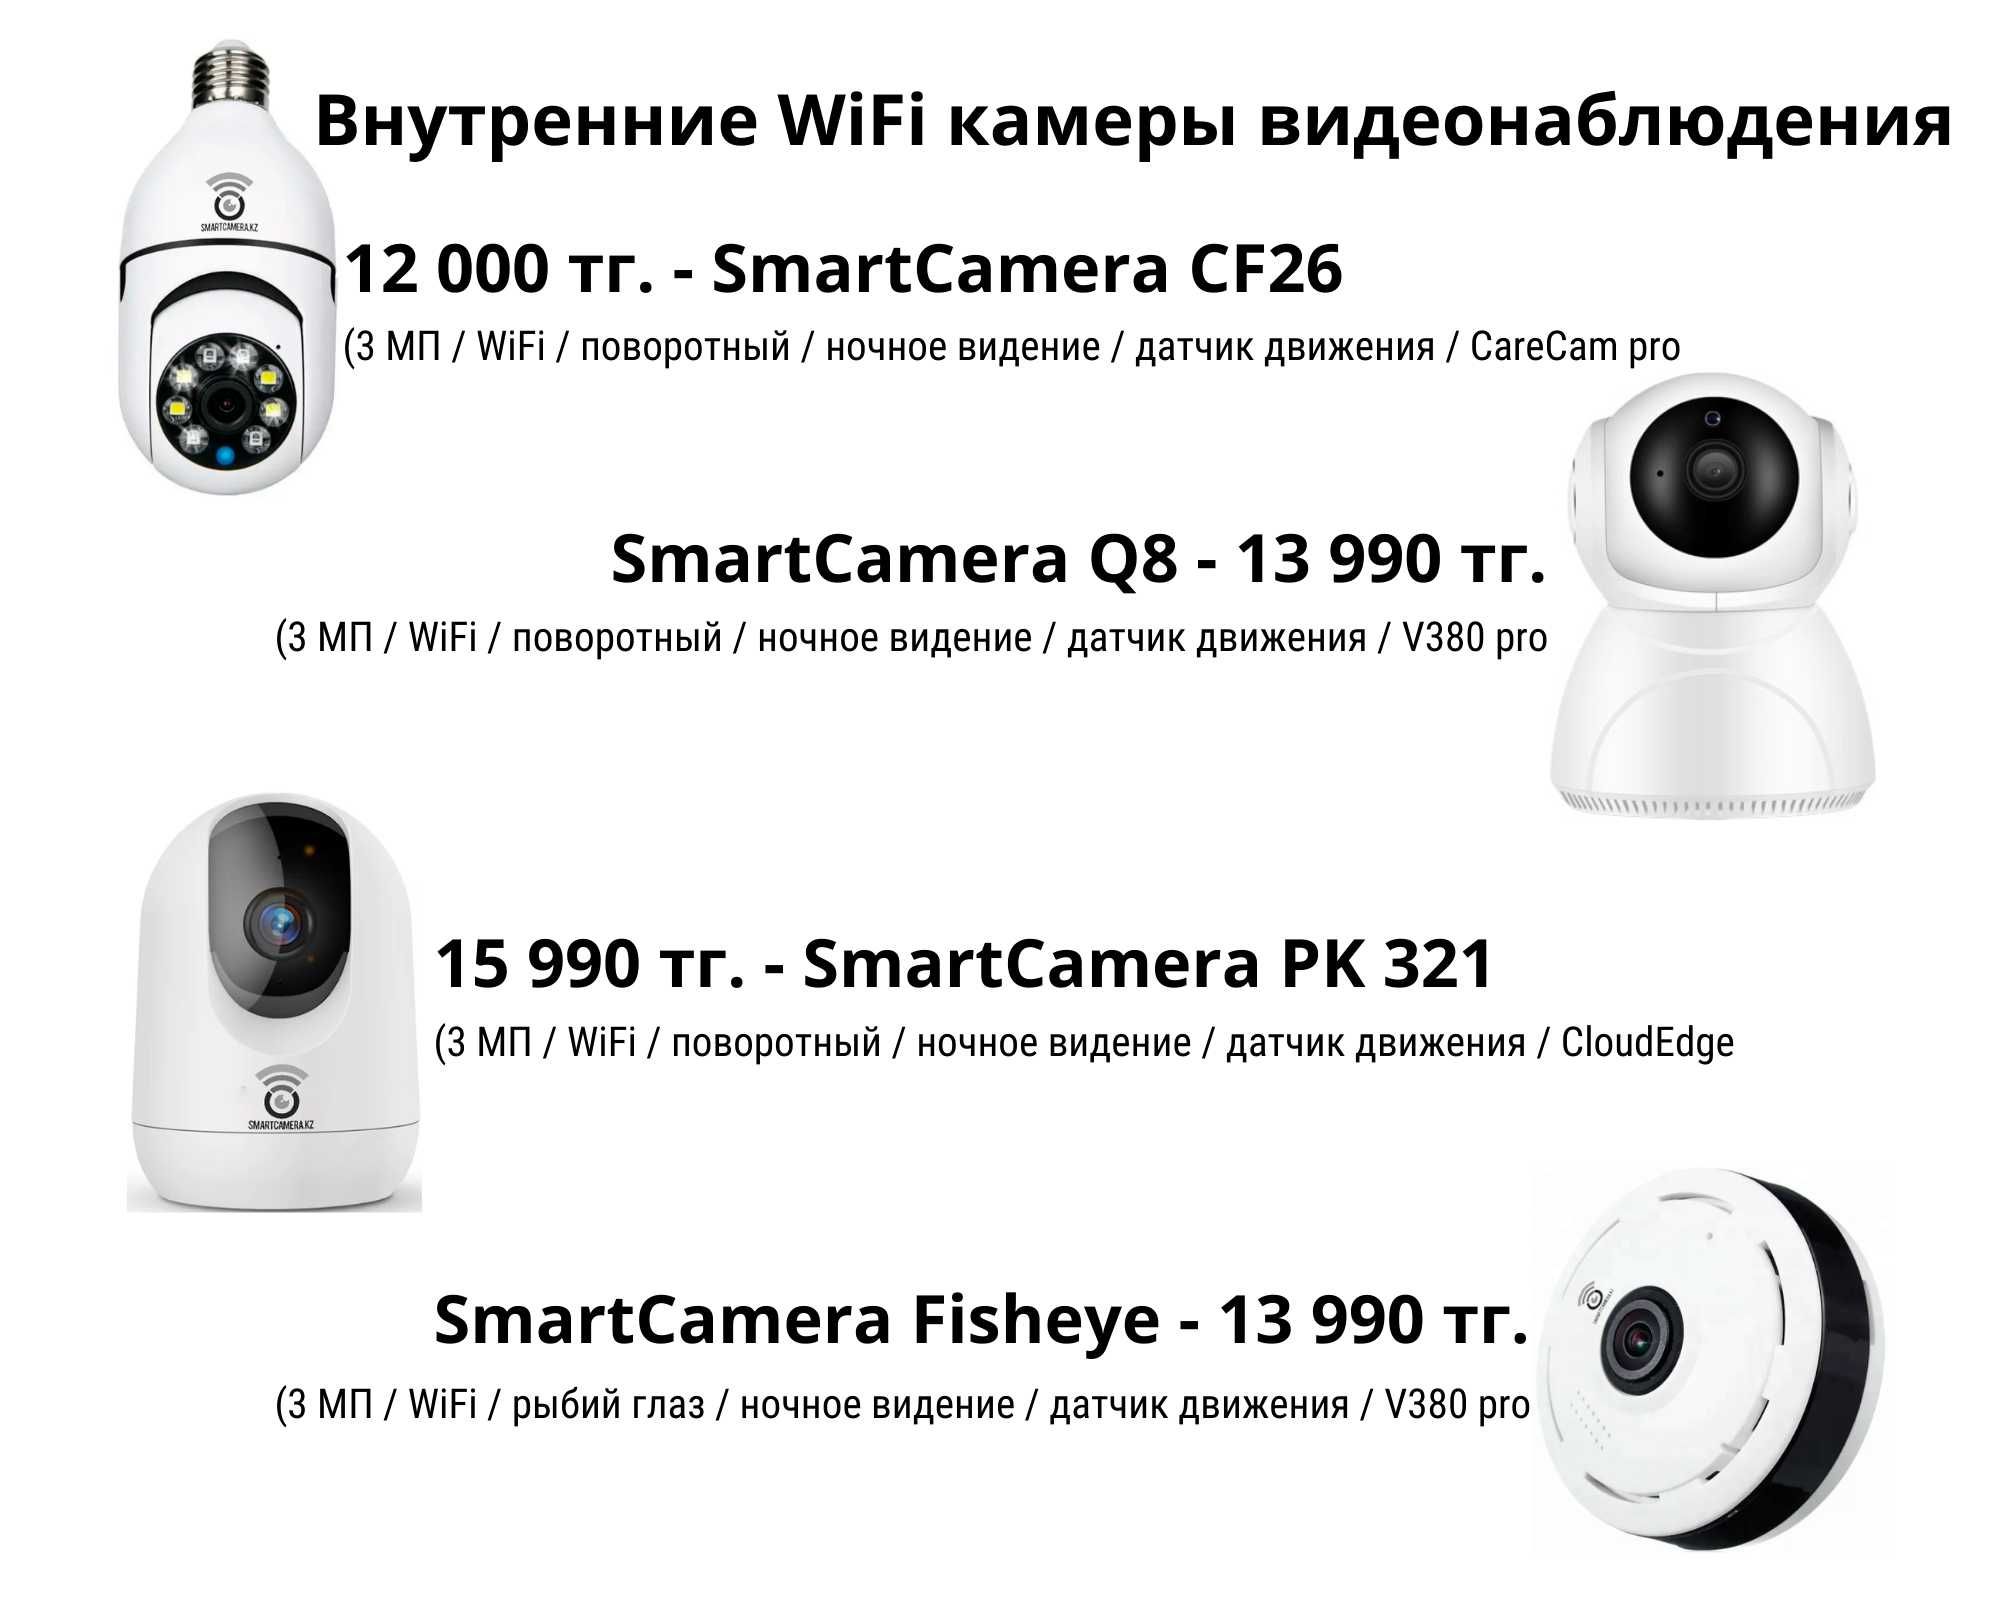 WiFi и 4G камеры видеонаблюдения для вашего дома, дачи и бизнеса